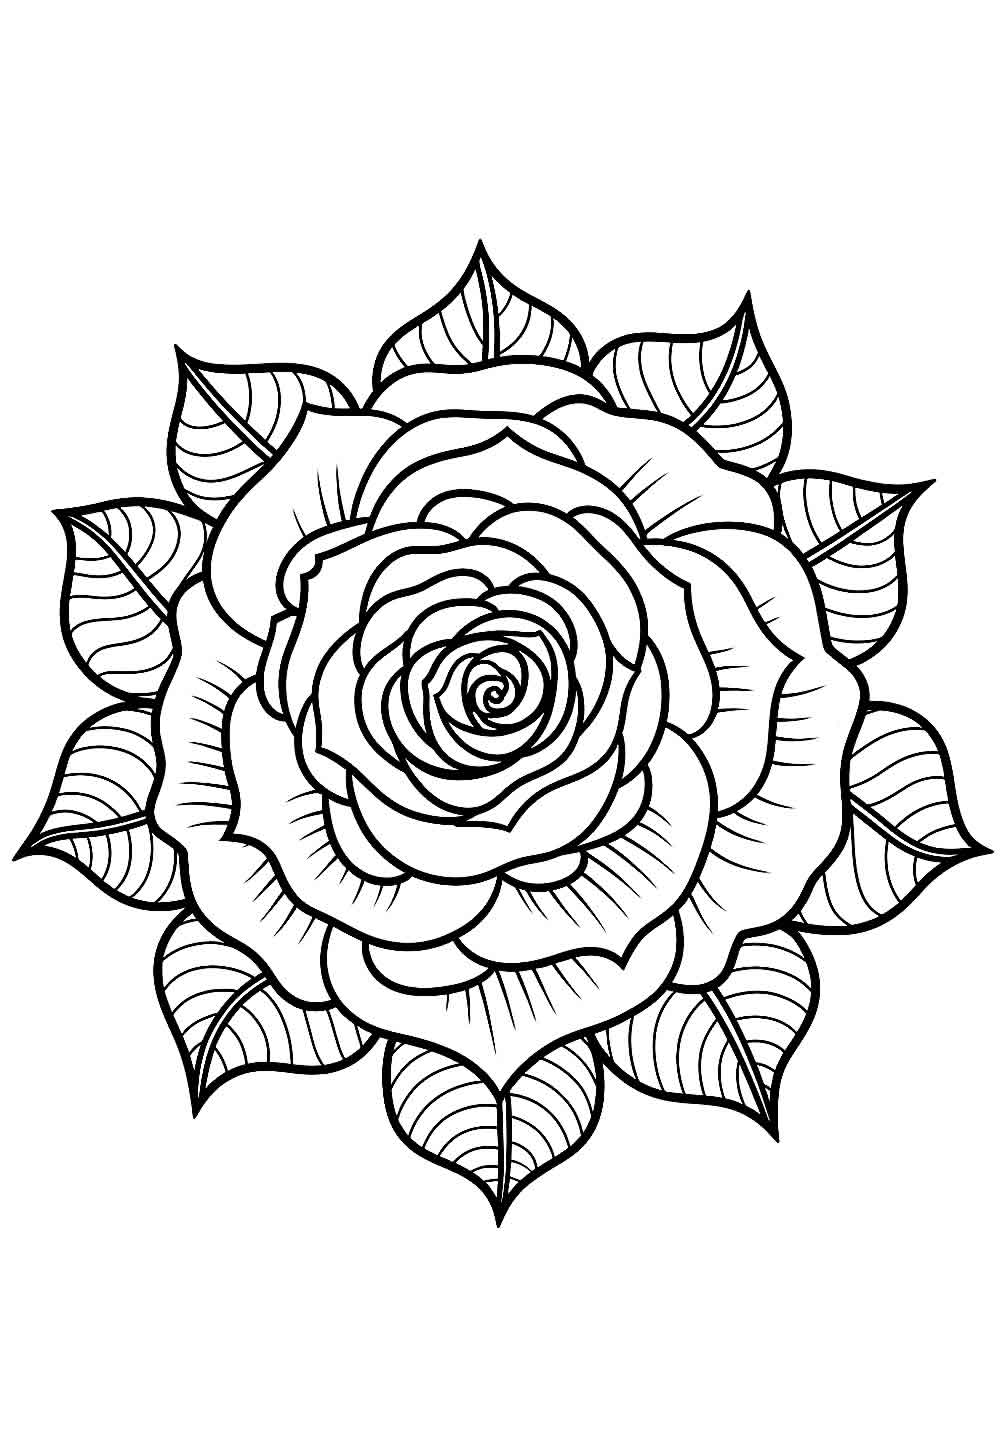 Desenho de Flor com Mandala - Rosa